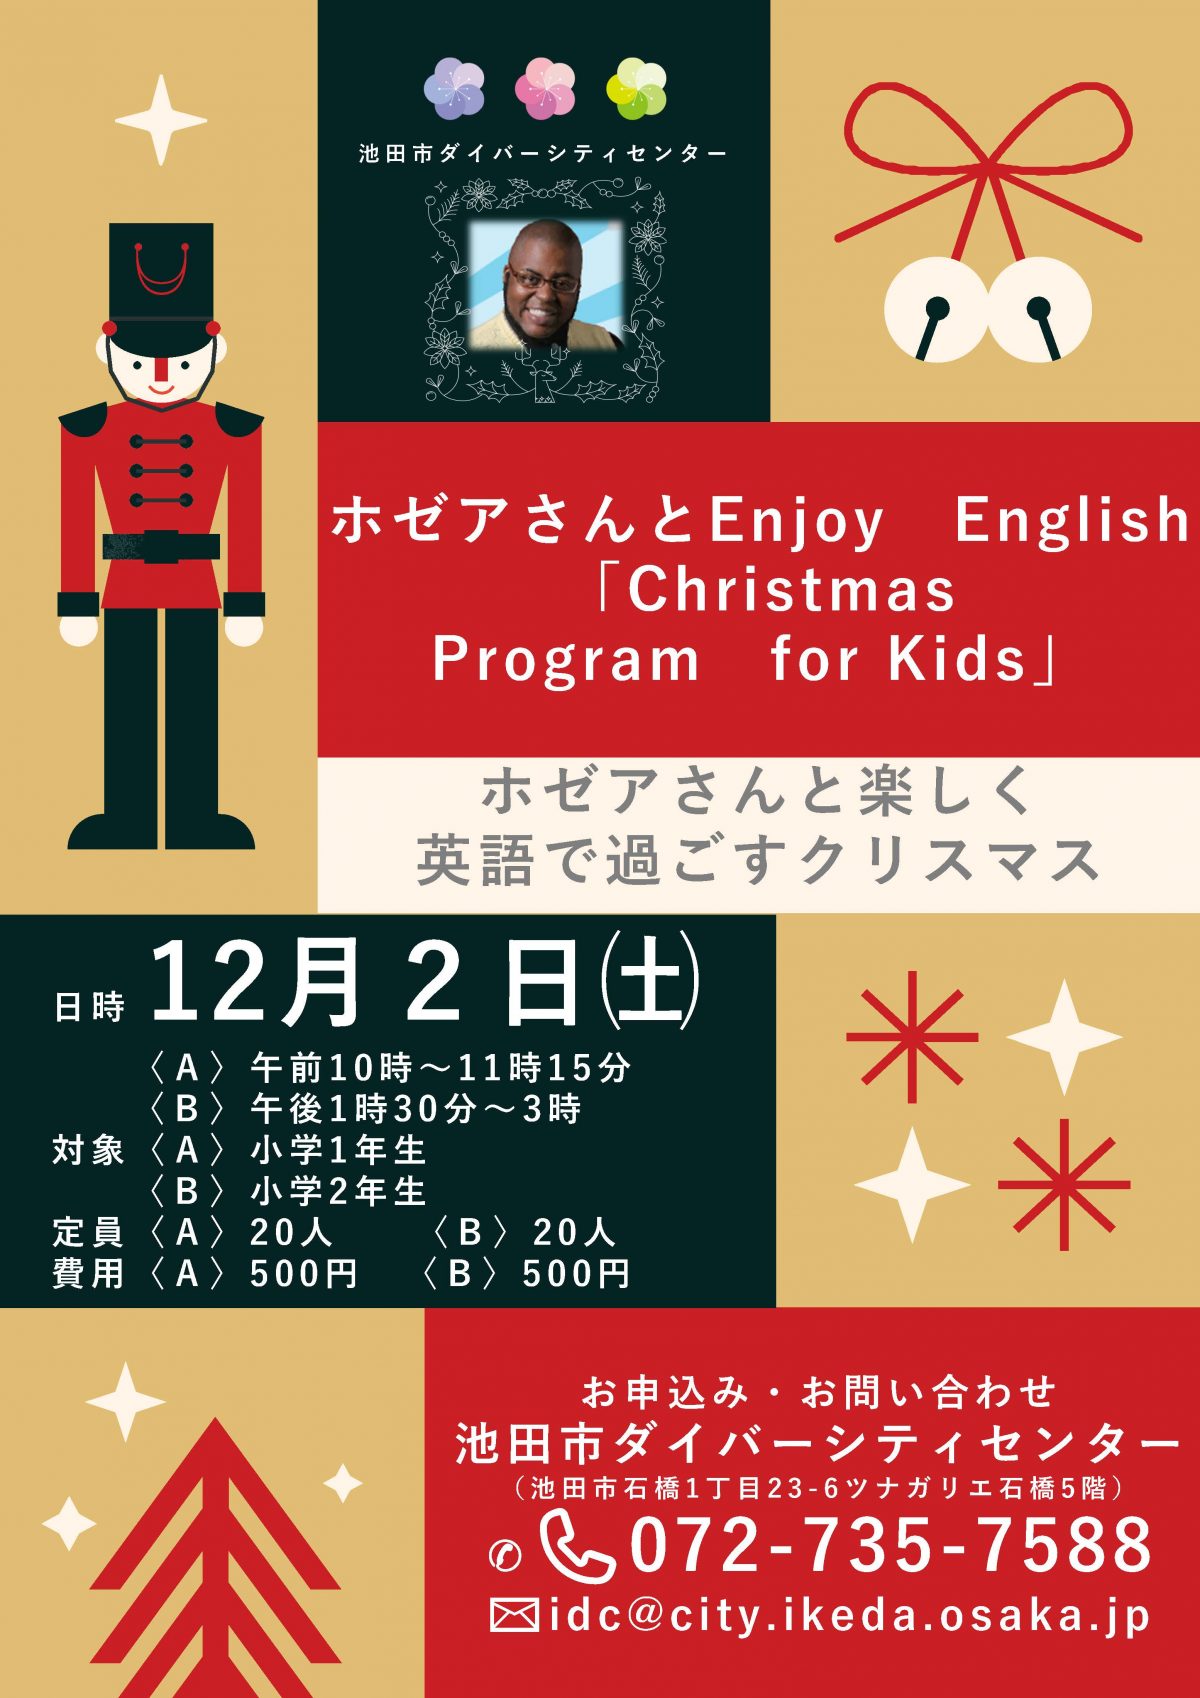 【小学1・2年生対象】ホゼアさんとEnjoy English 〜楽しく英語で過ごすクリスマス〜